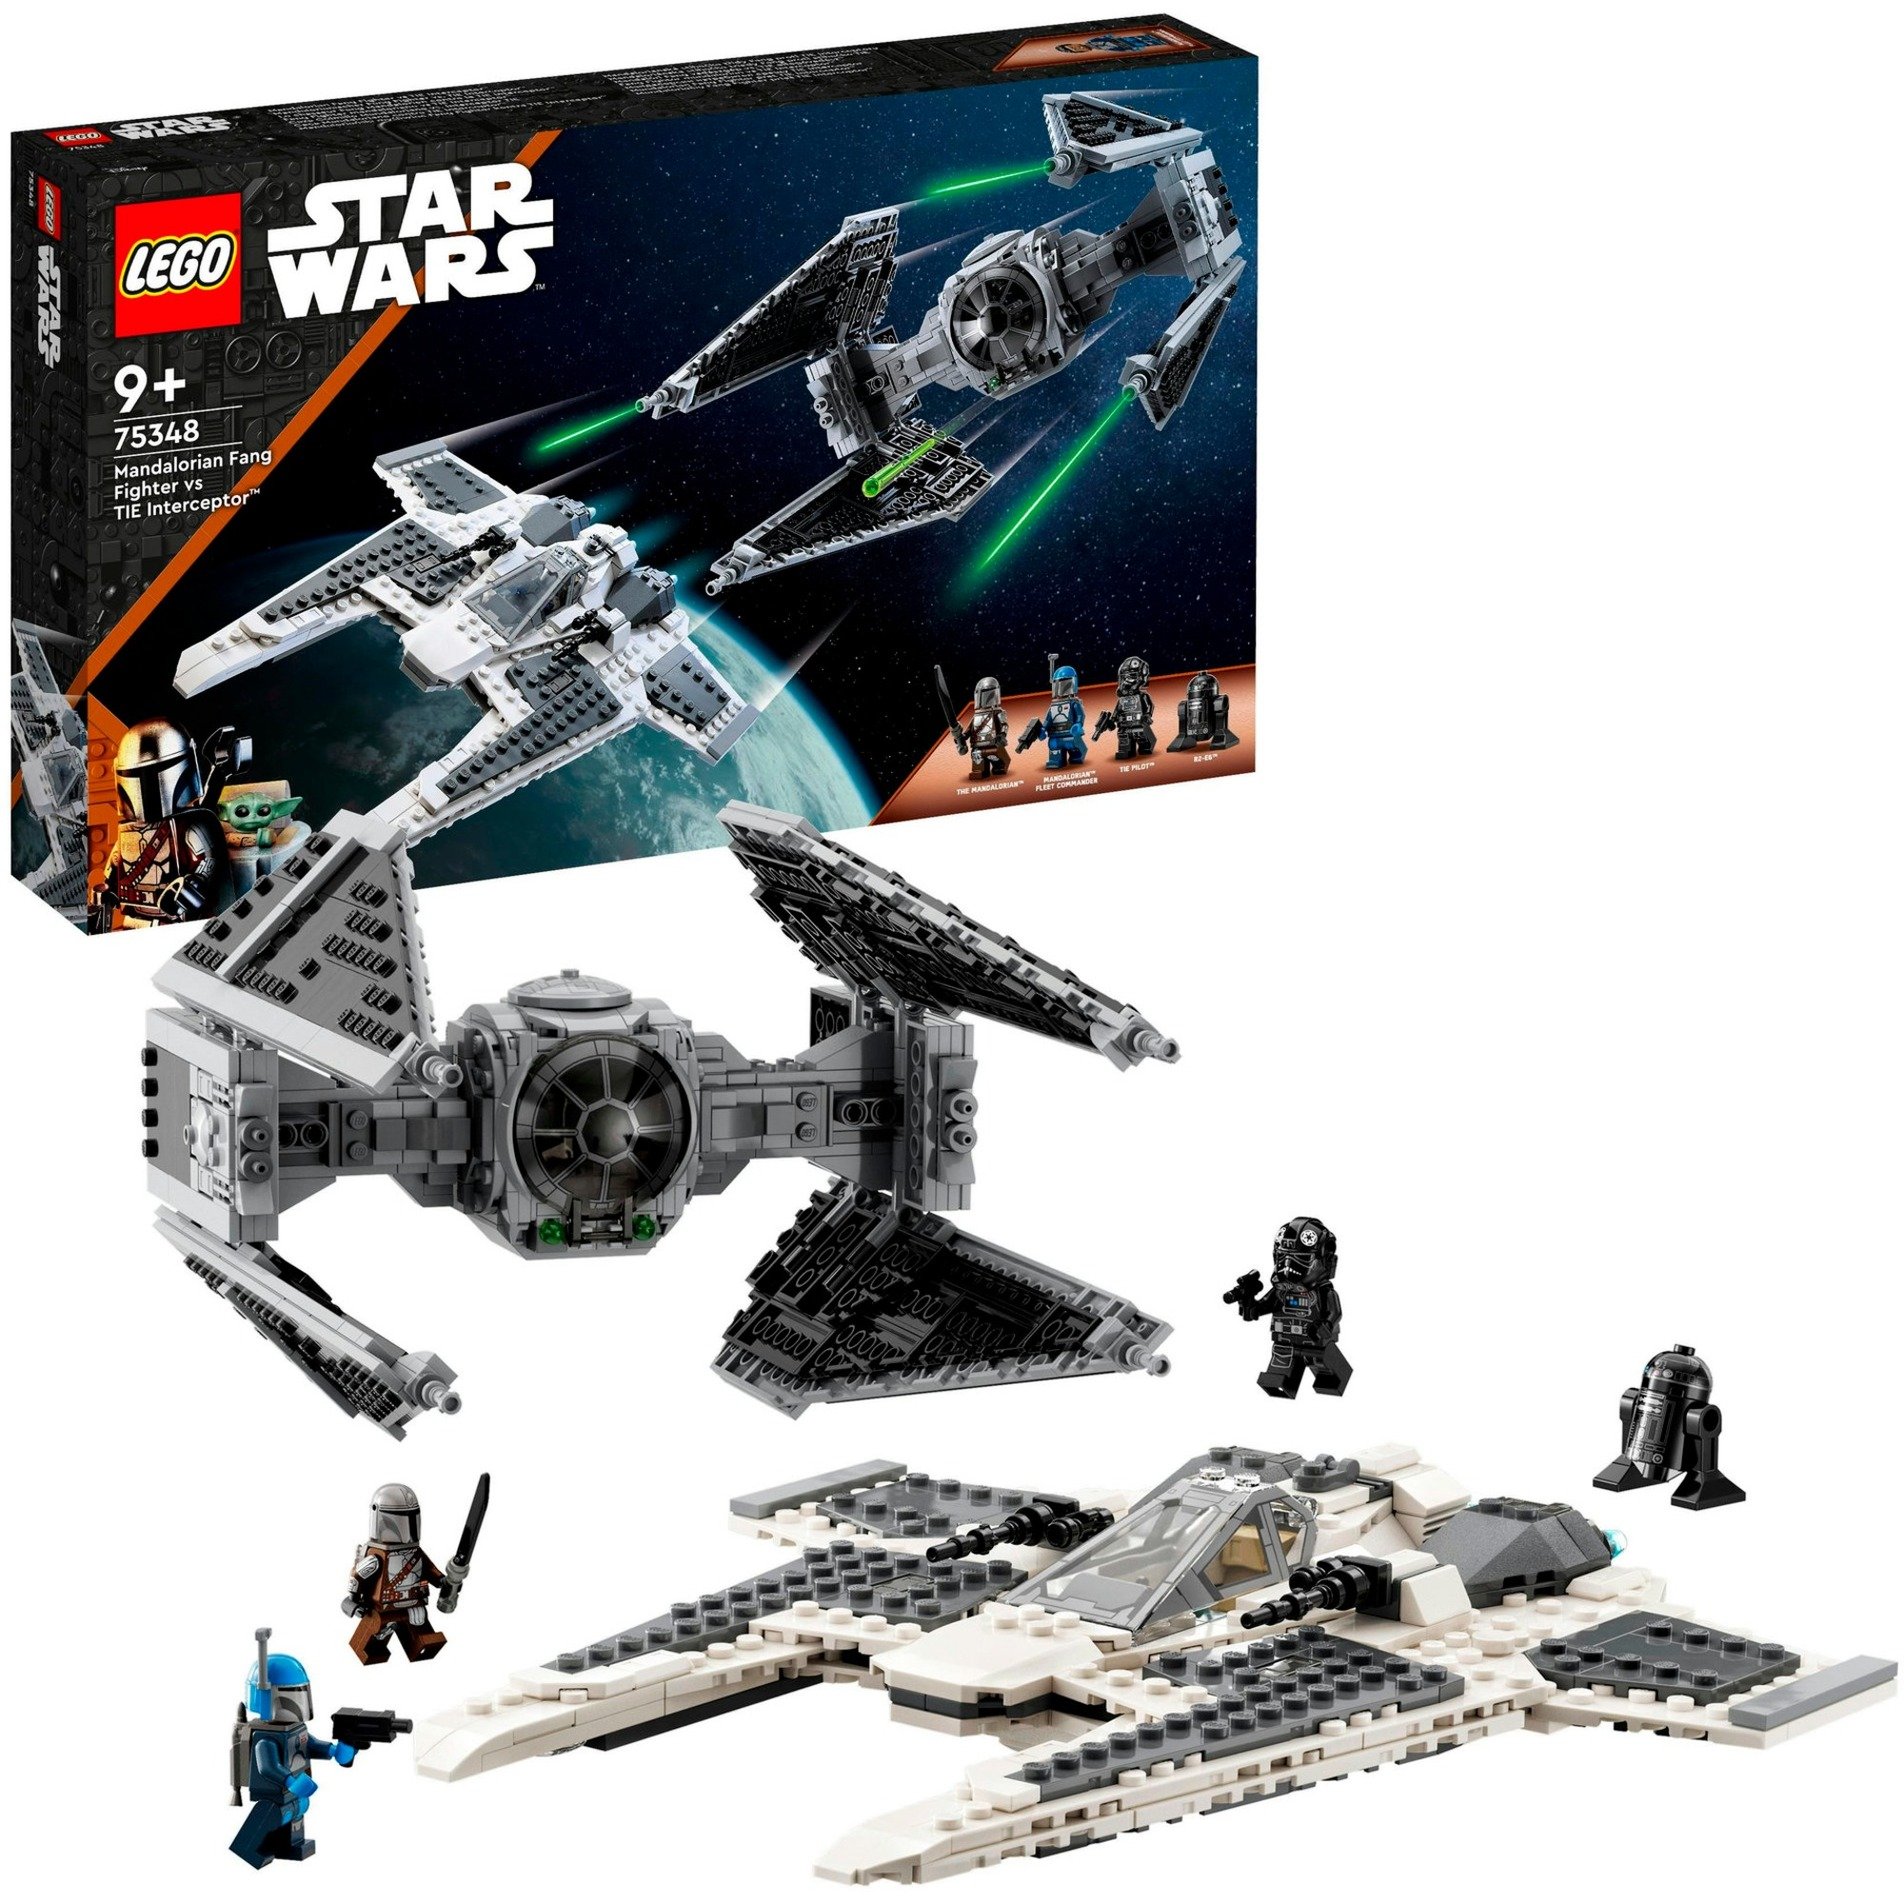 75348 Star Wars Mandalorianischer Fang Fighter vs. TIE Interceptor, Konstruktionsspielzeug von Lego